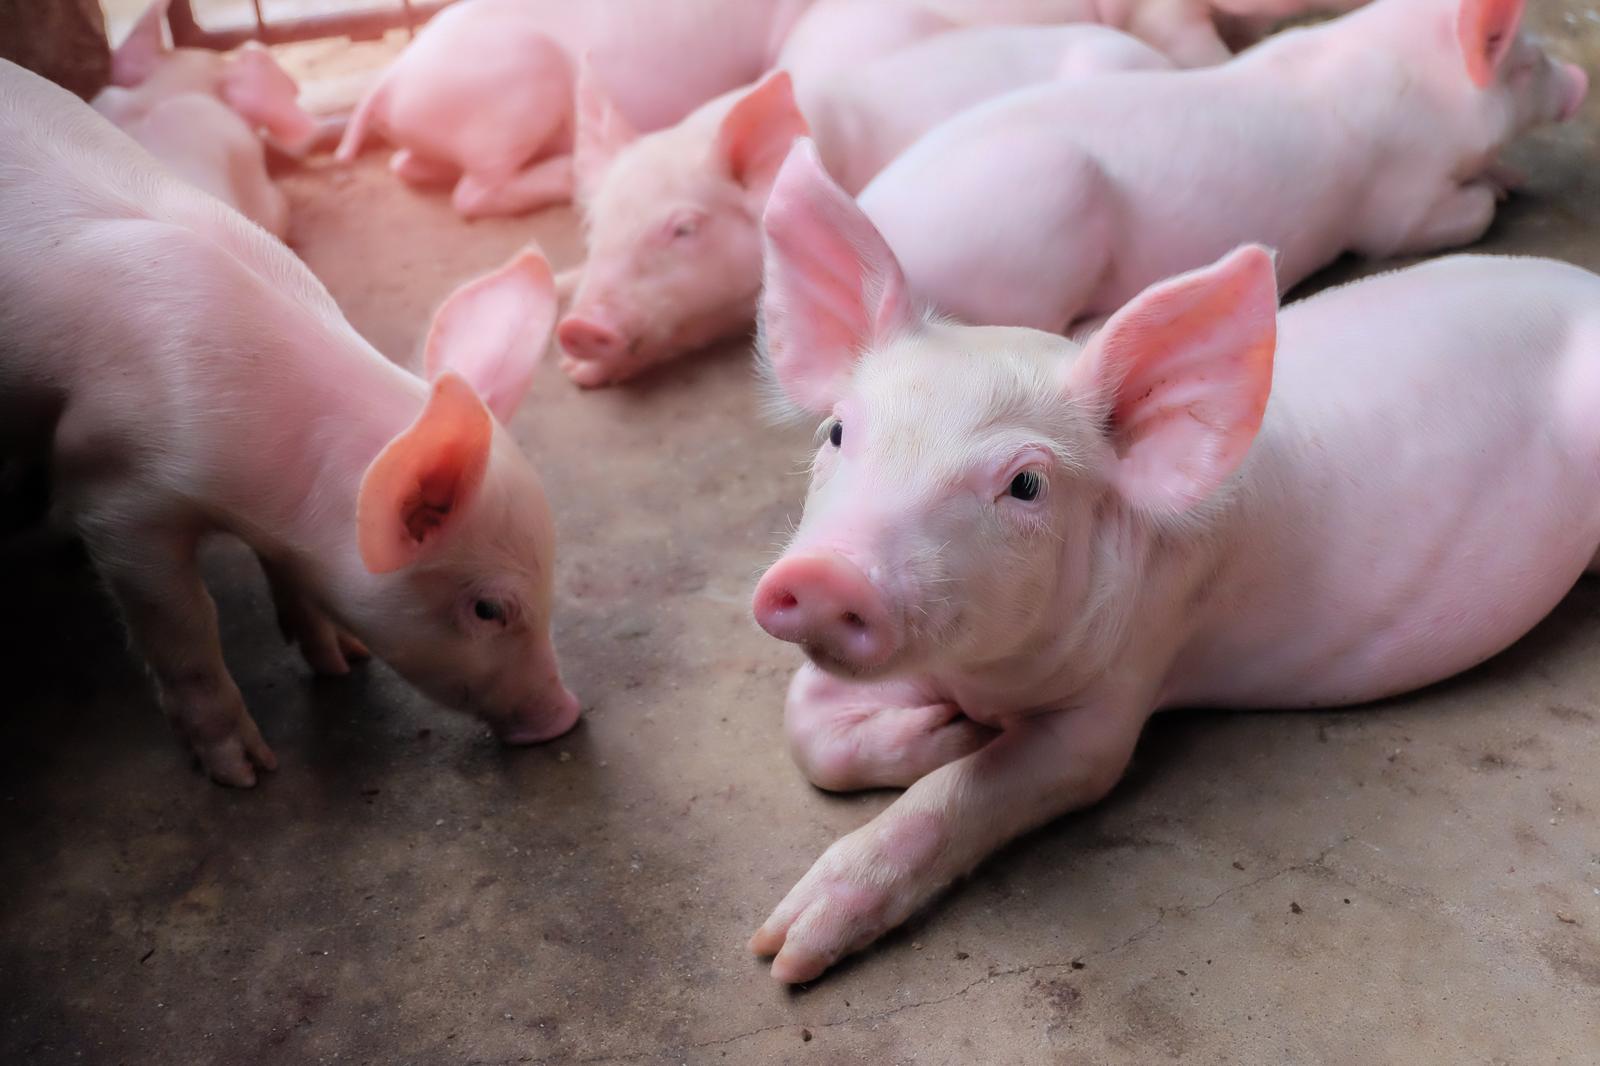 Raising of swine/pigs in Lääne-Nigula vald